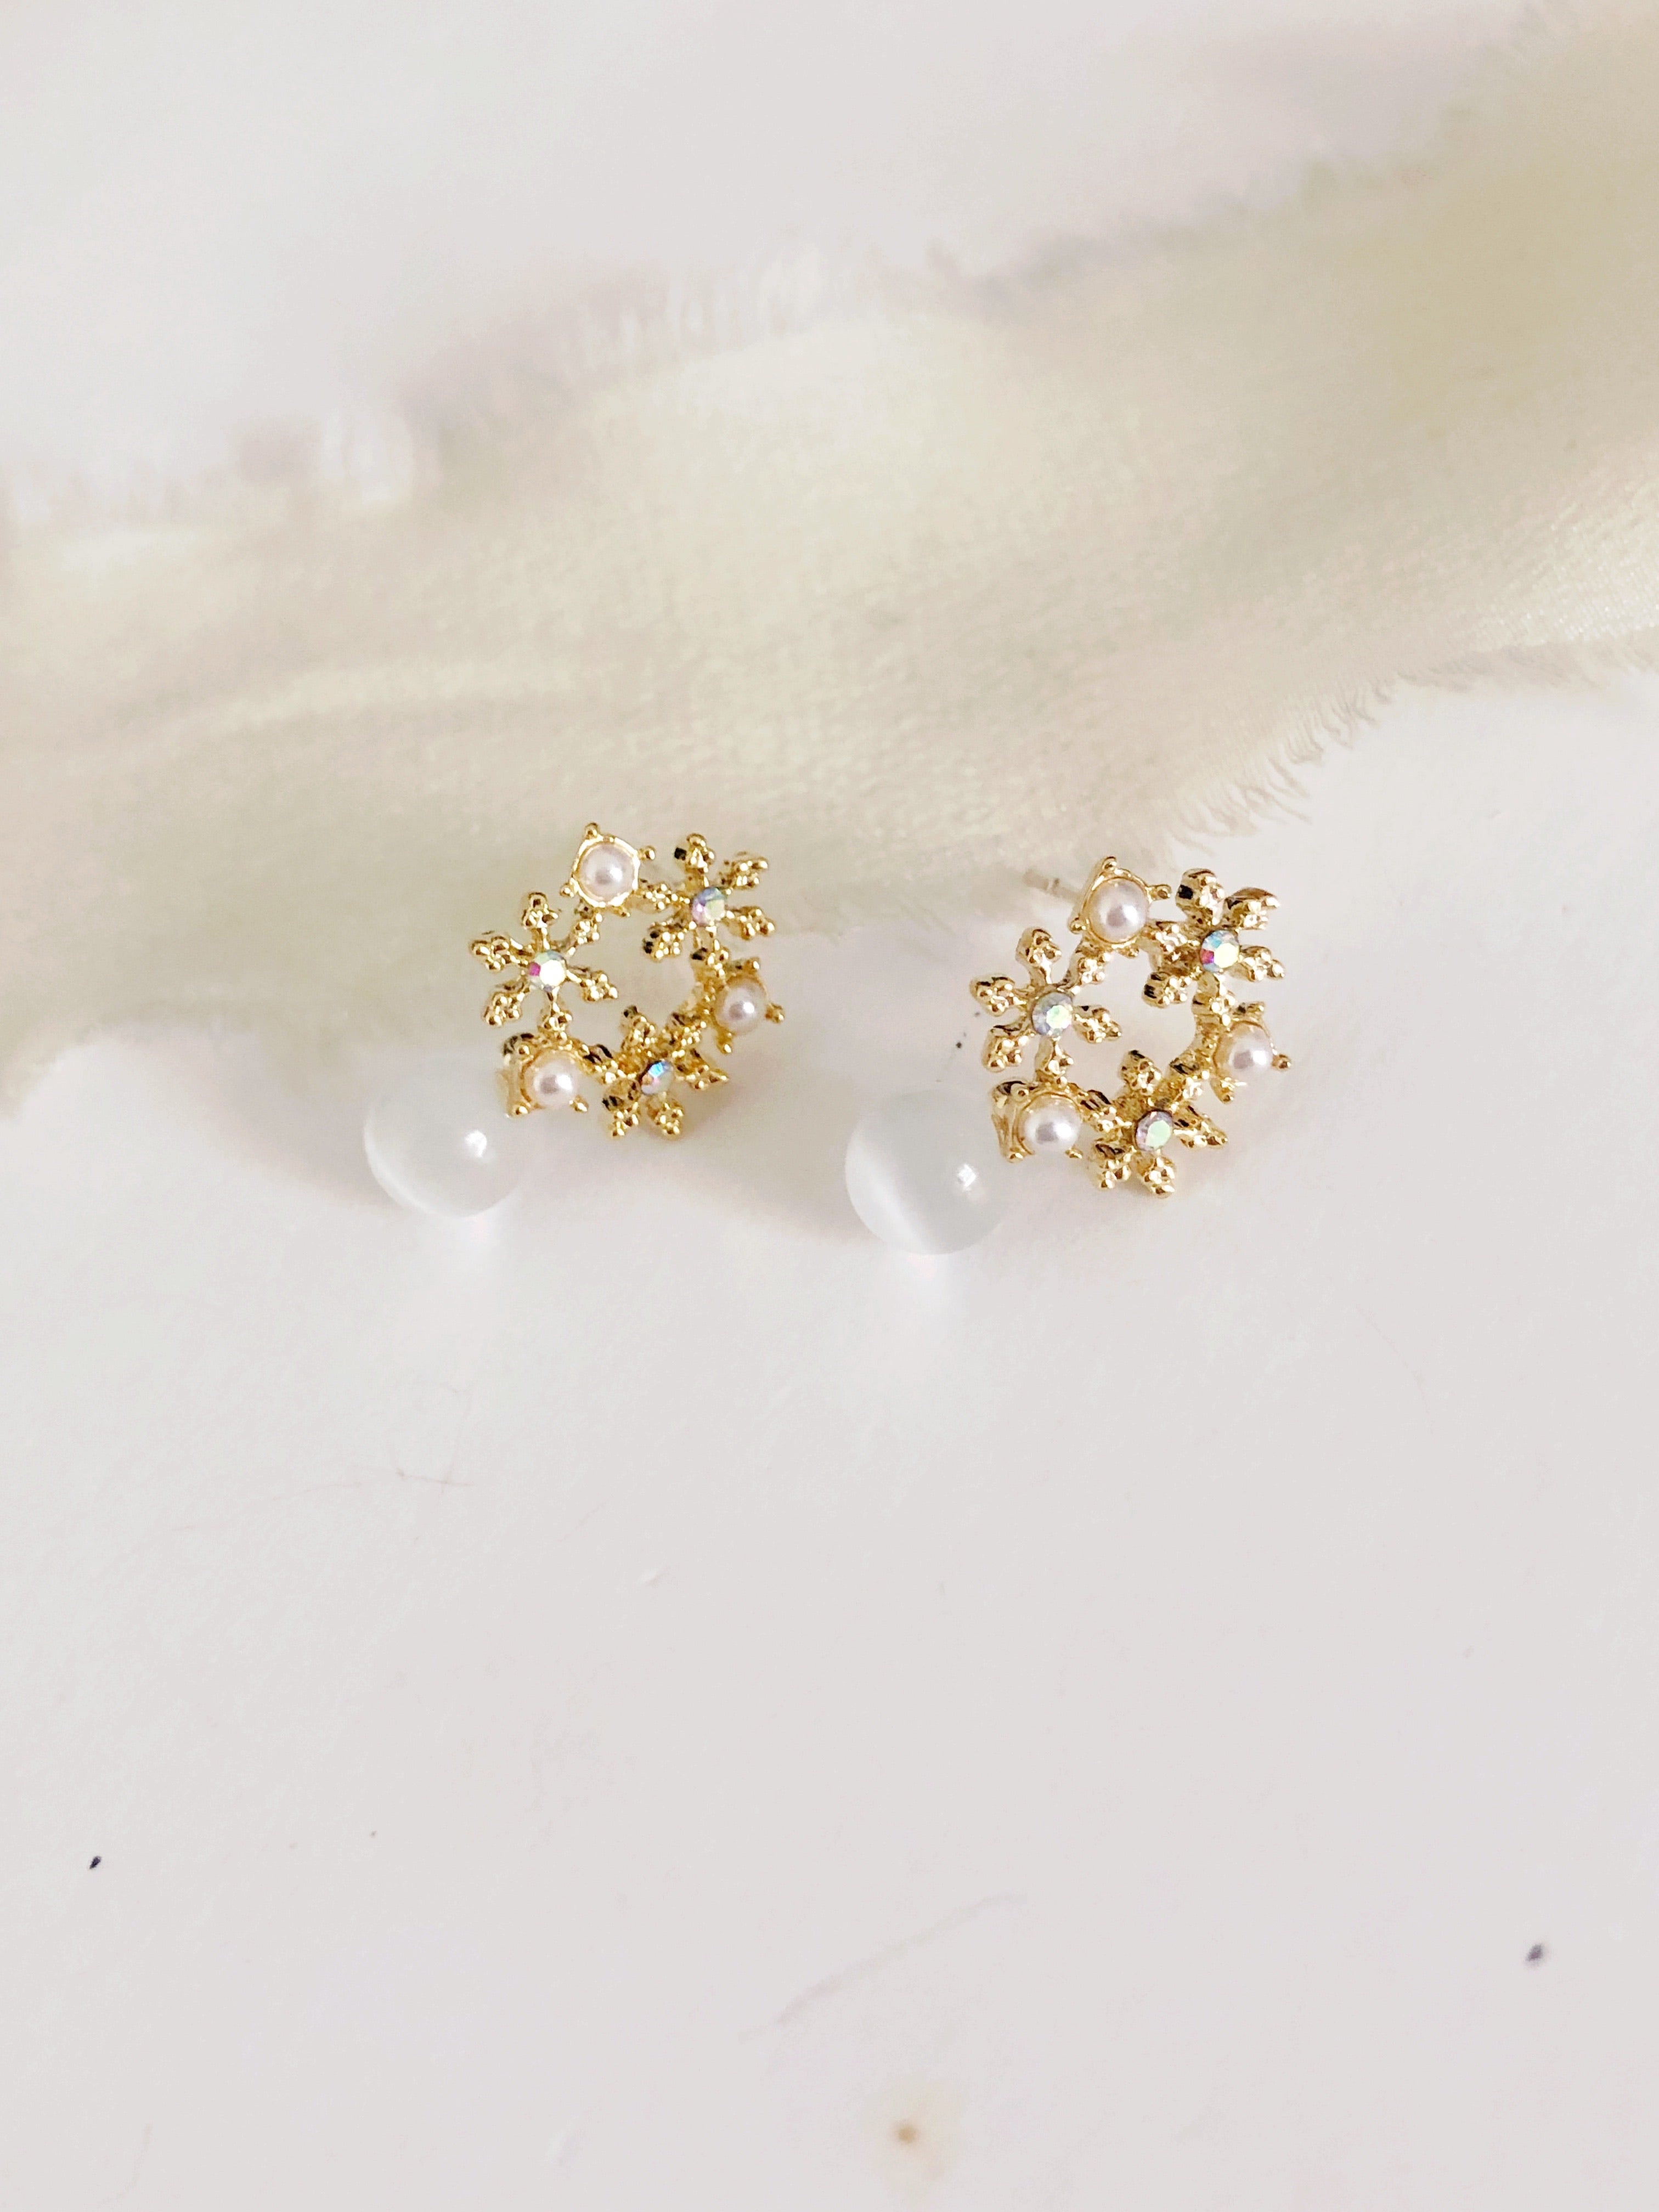 Cateye Petite Gold Stud Earrings